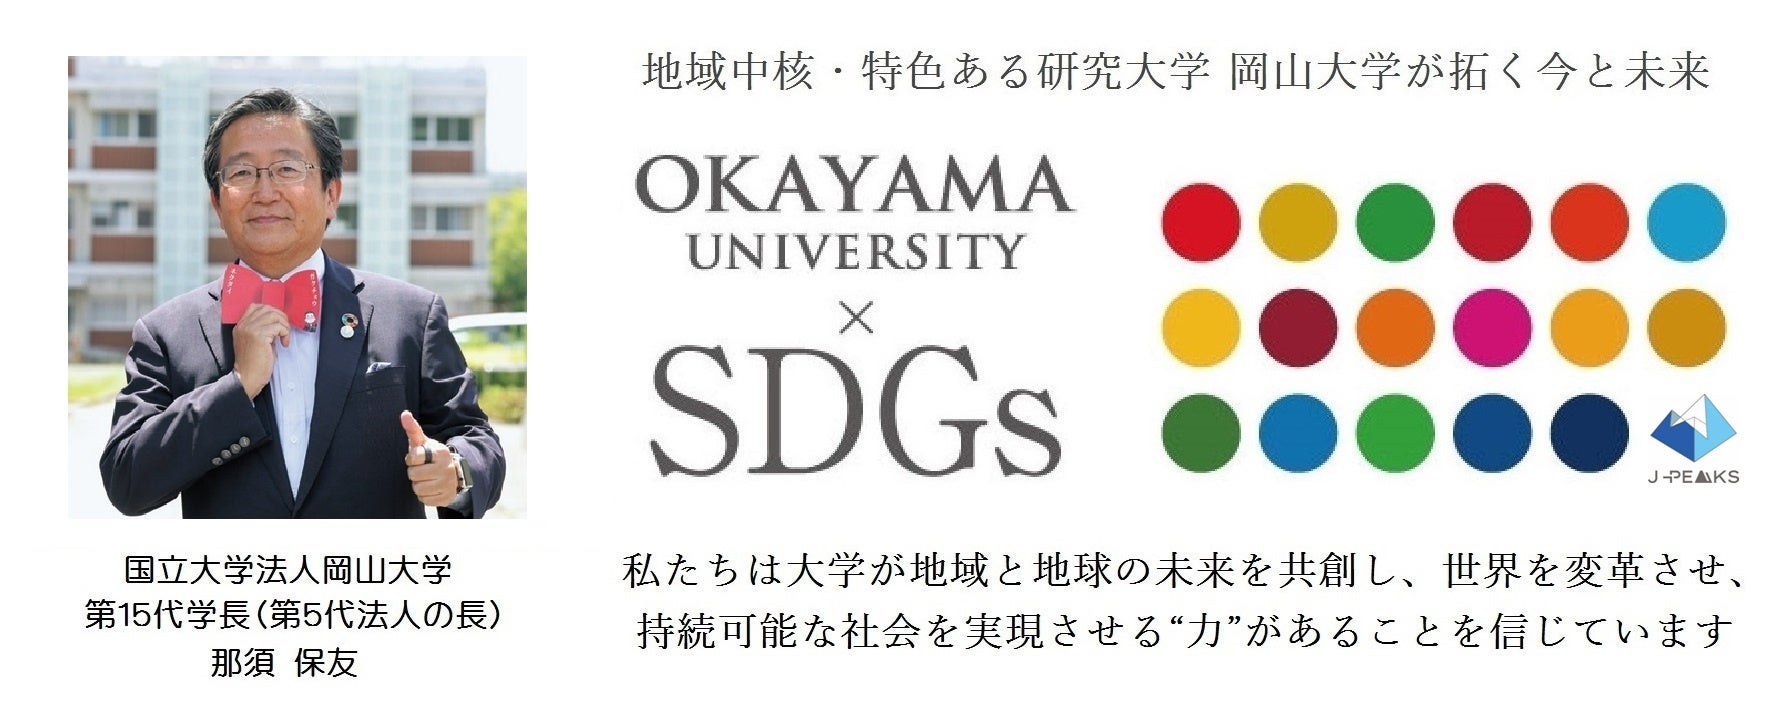 【岡山大学】岡山大学・アメリカ国務省「重要言語奨学金（CLS）プログラム」 開講式を挙行しました